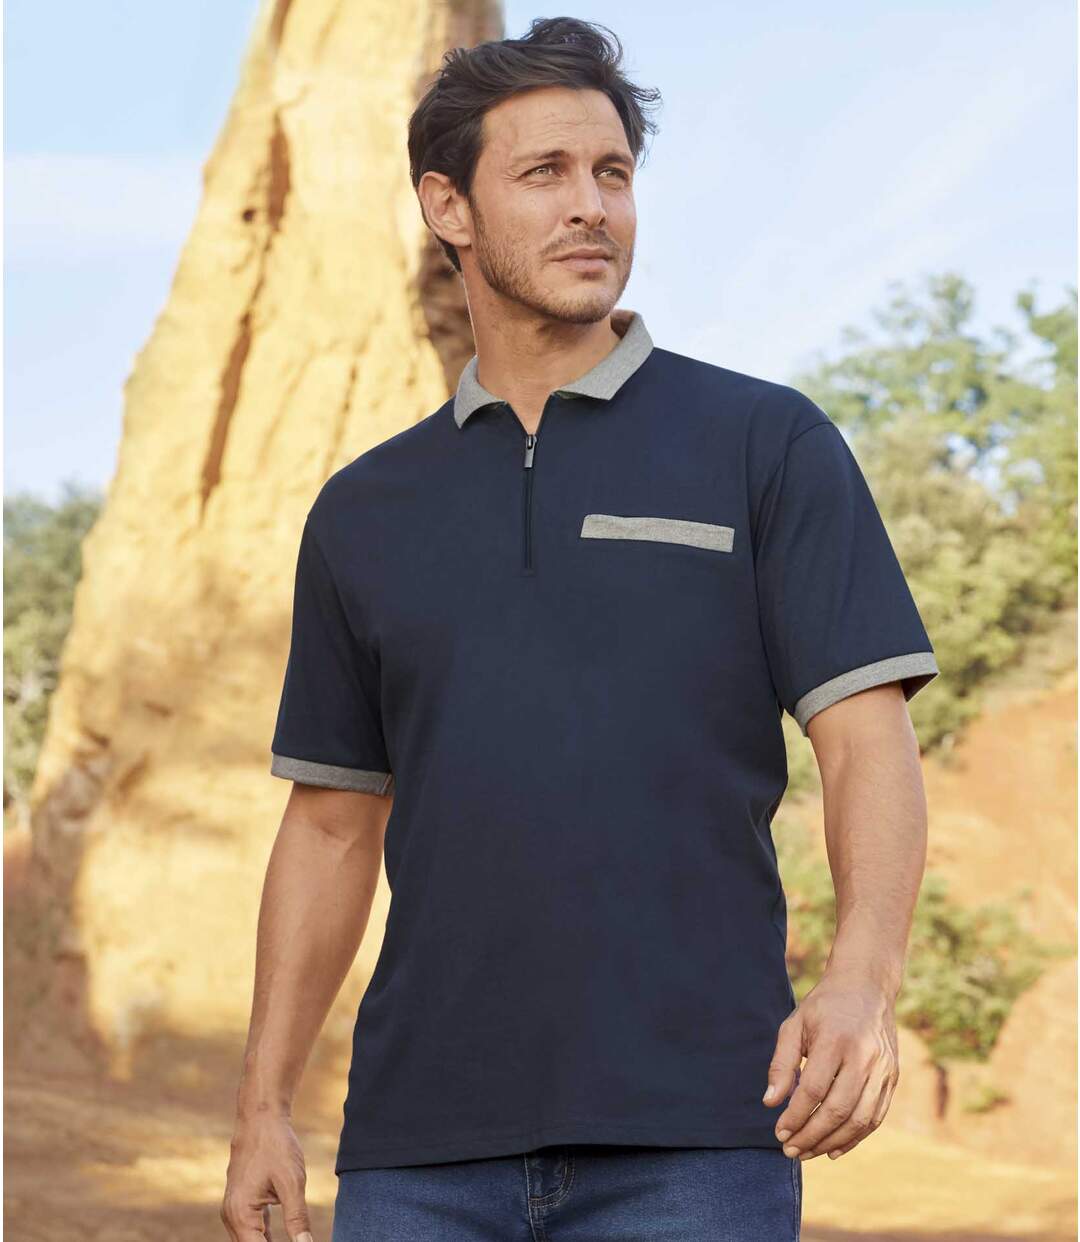 Pack of 2 Atlas For Men® Polo Shirts - Navy Blue Atlas For Men